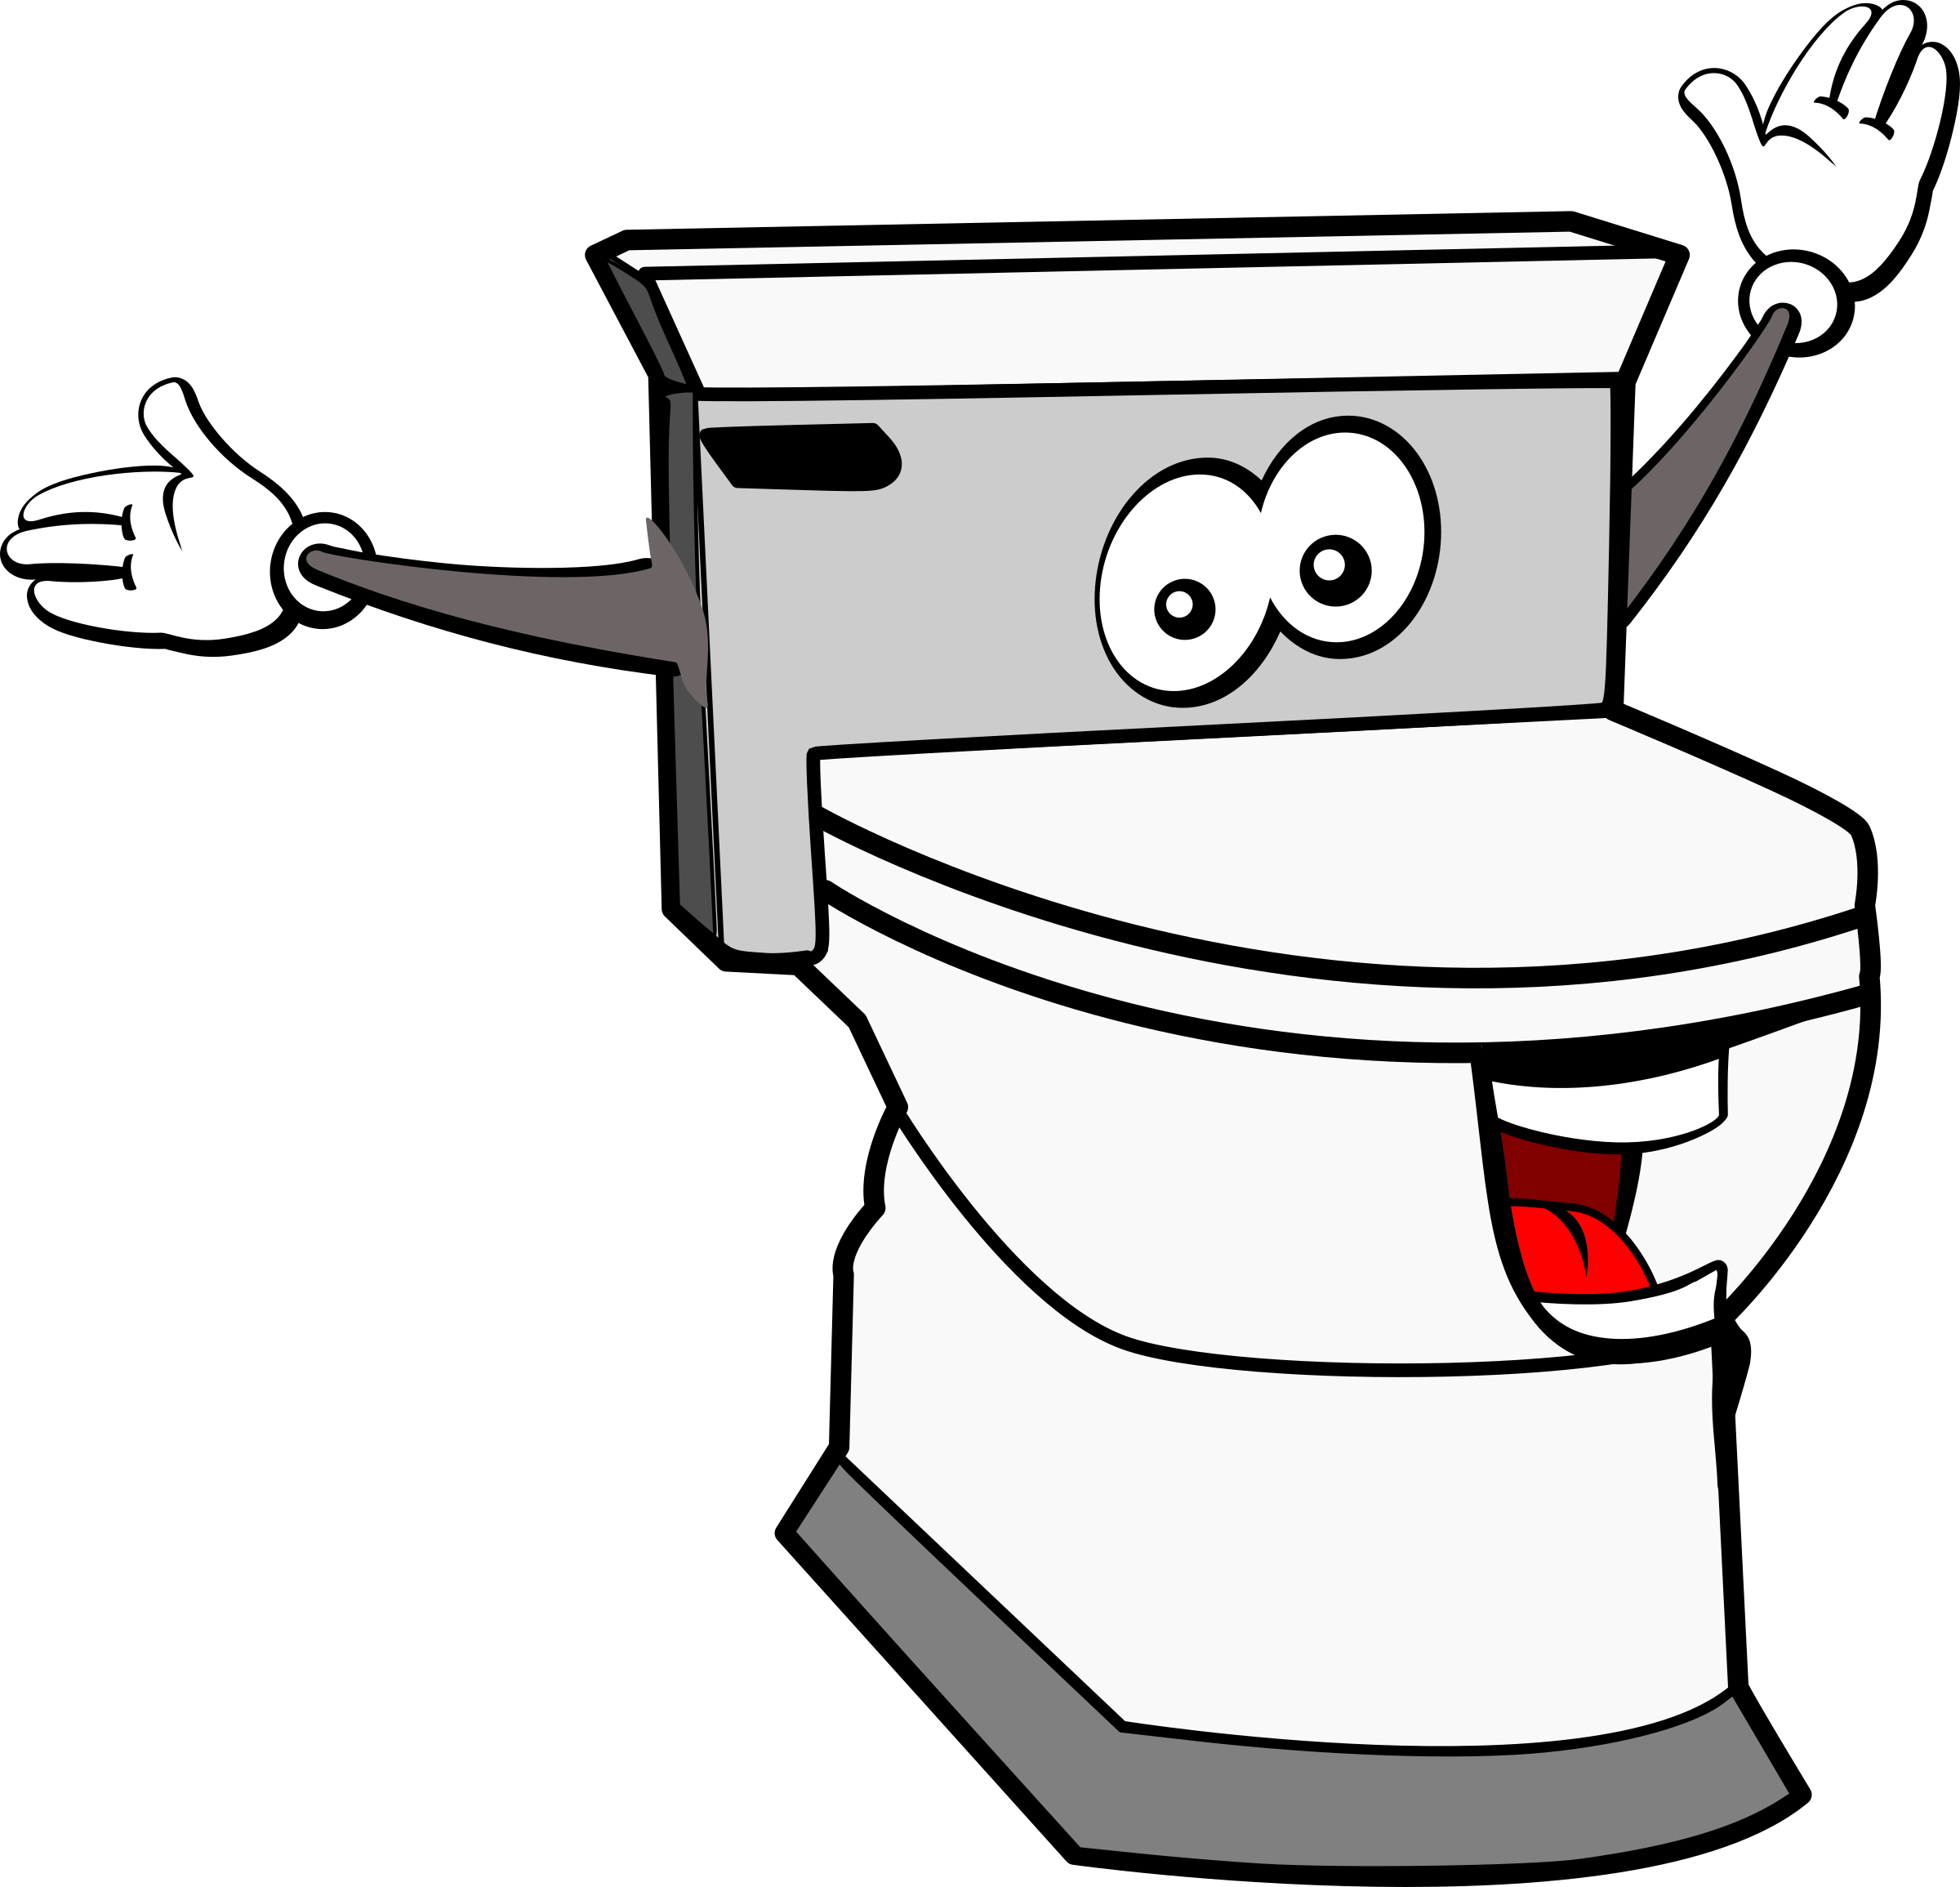 Toilet Cartoon Images Free - Papel Higiênico é Coisa Séria. | Bodemawasuma